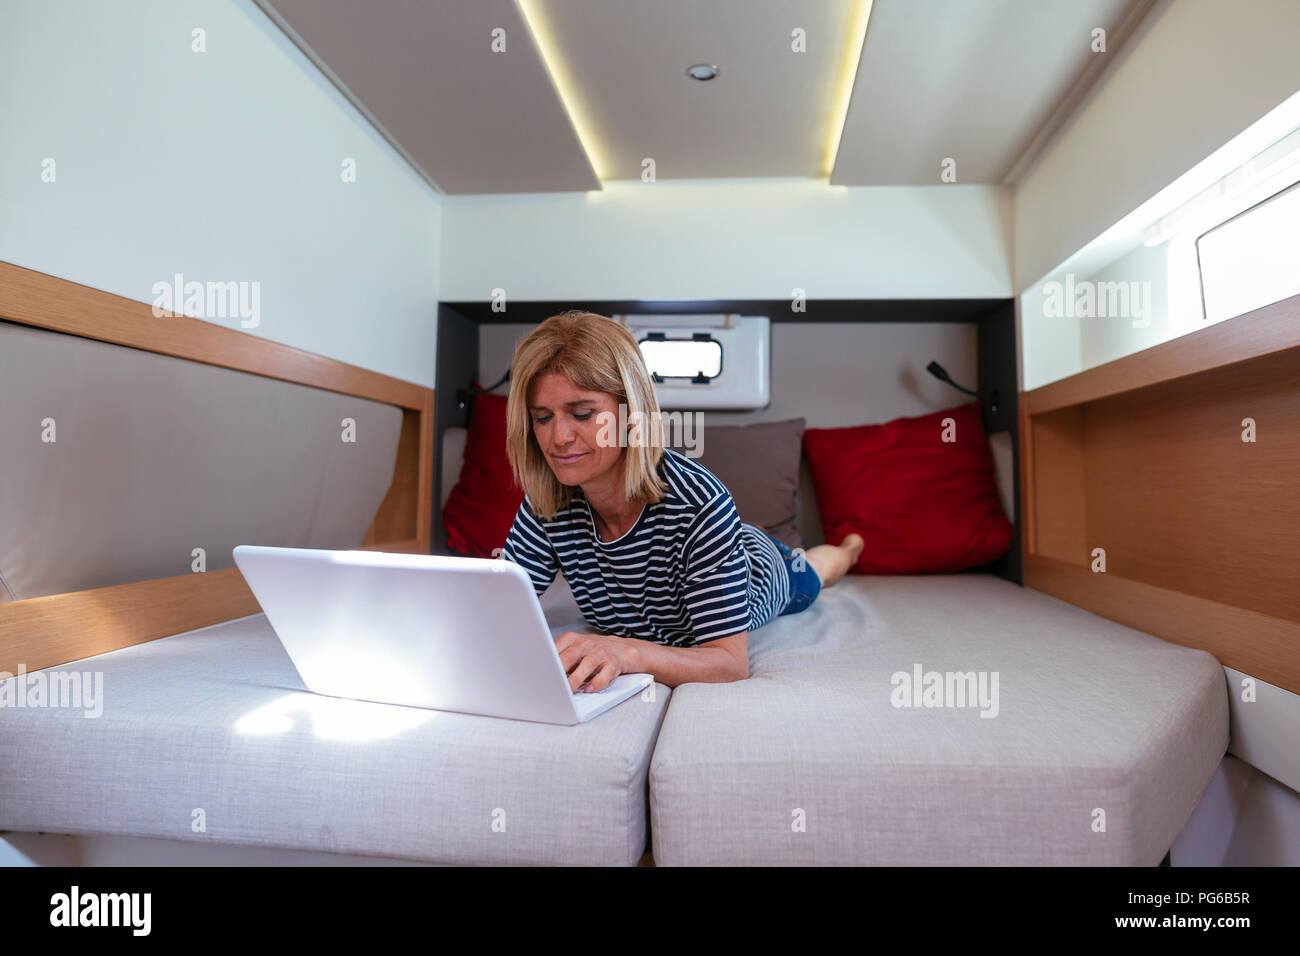 Reife Frau liegend auf Bett in einem Katamaran Kabine, mit Laptop  Stockfotografie - Alamy